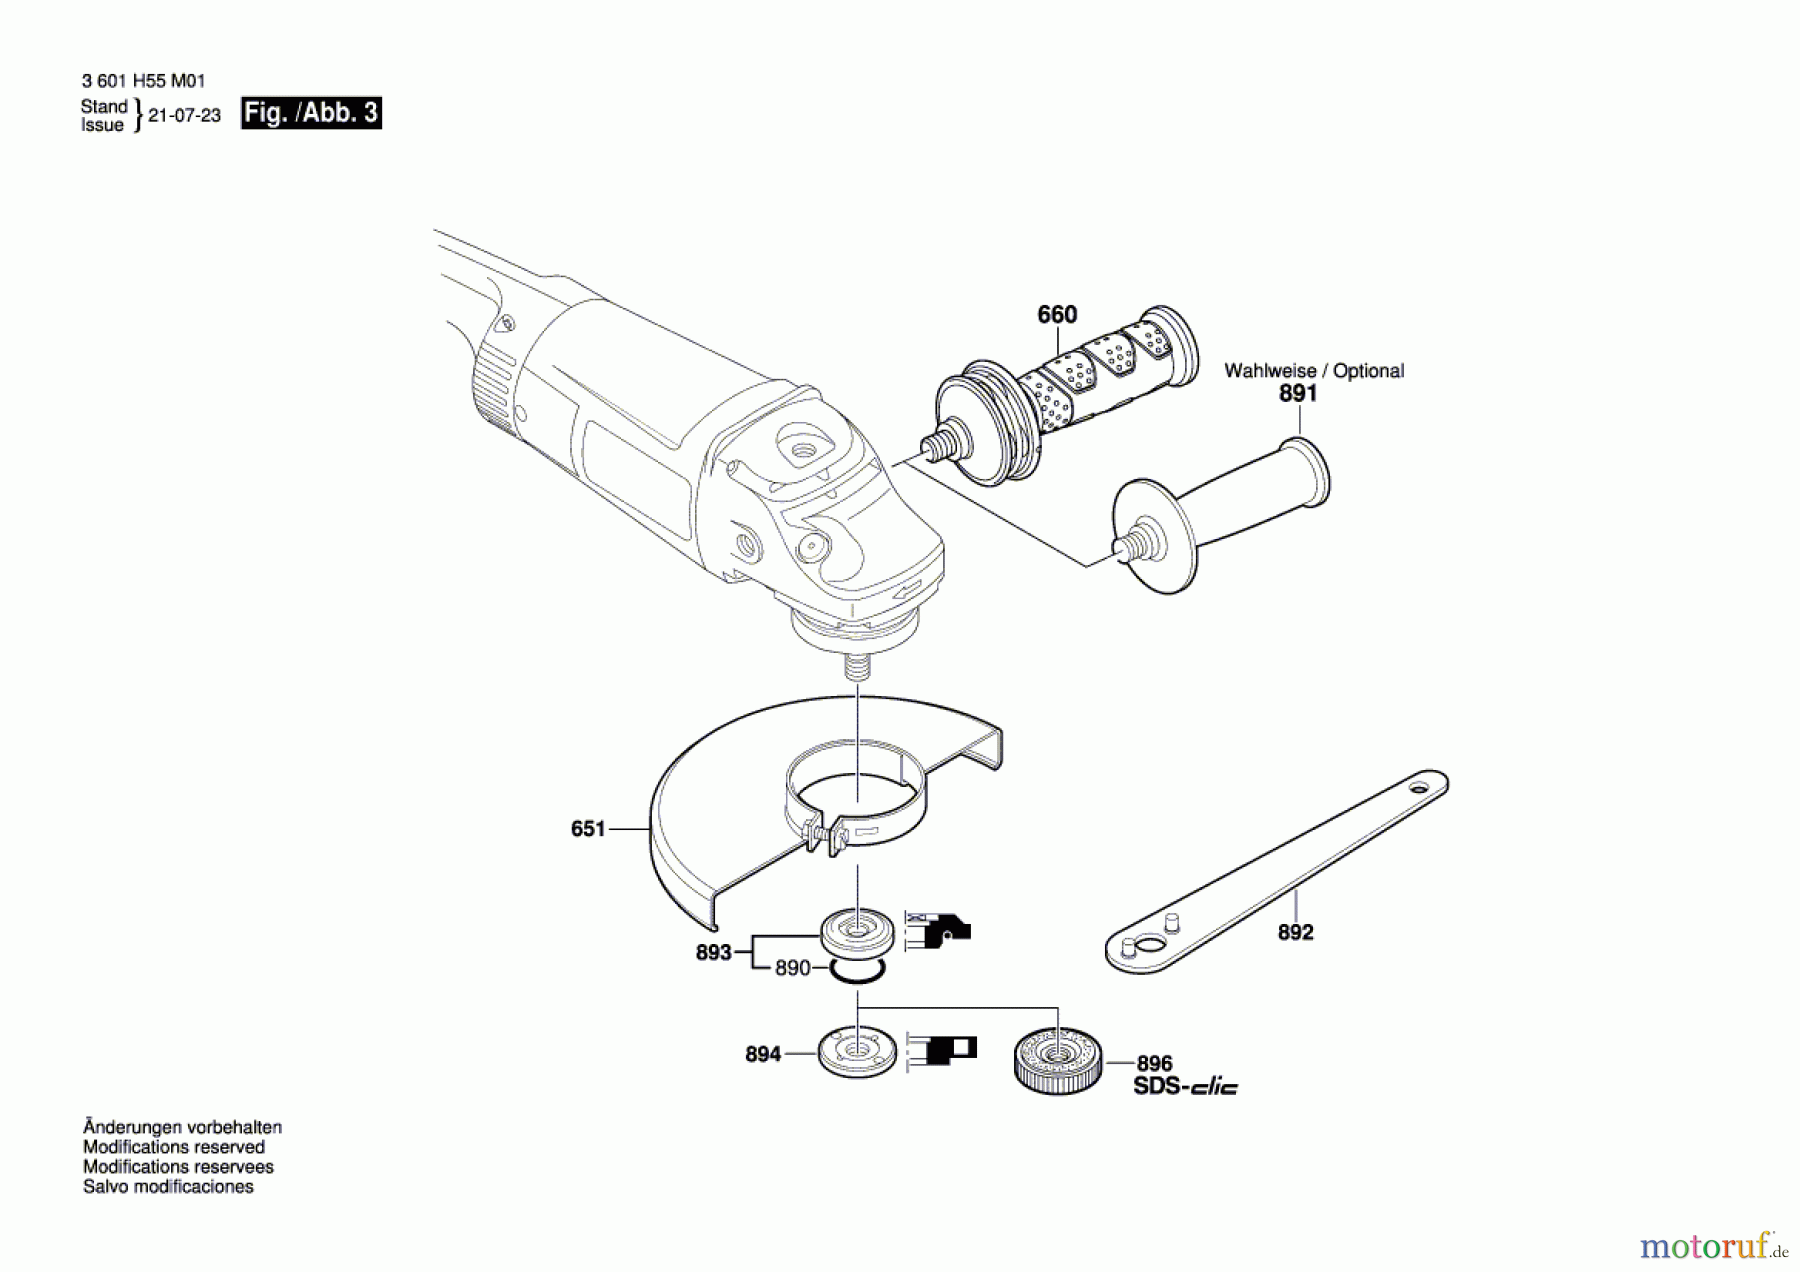  Bosch Werkzeug Winkelschleifer GWS 26-180 JH Seite 3